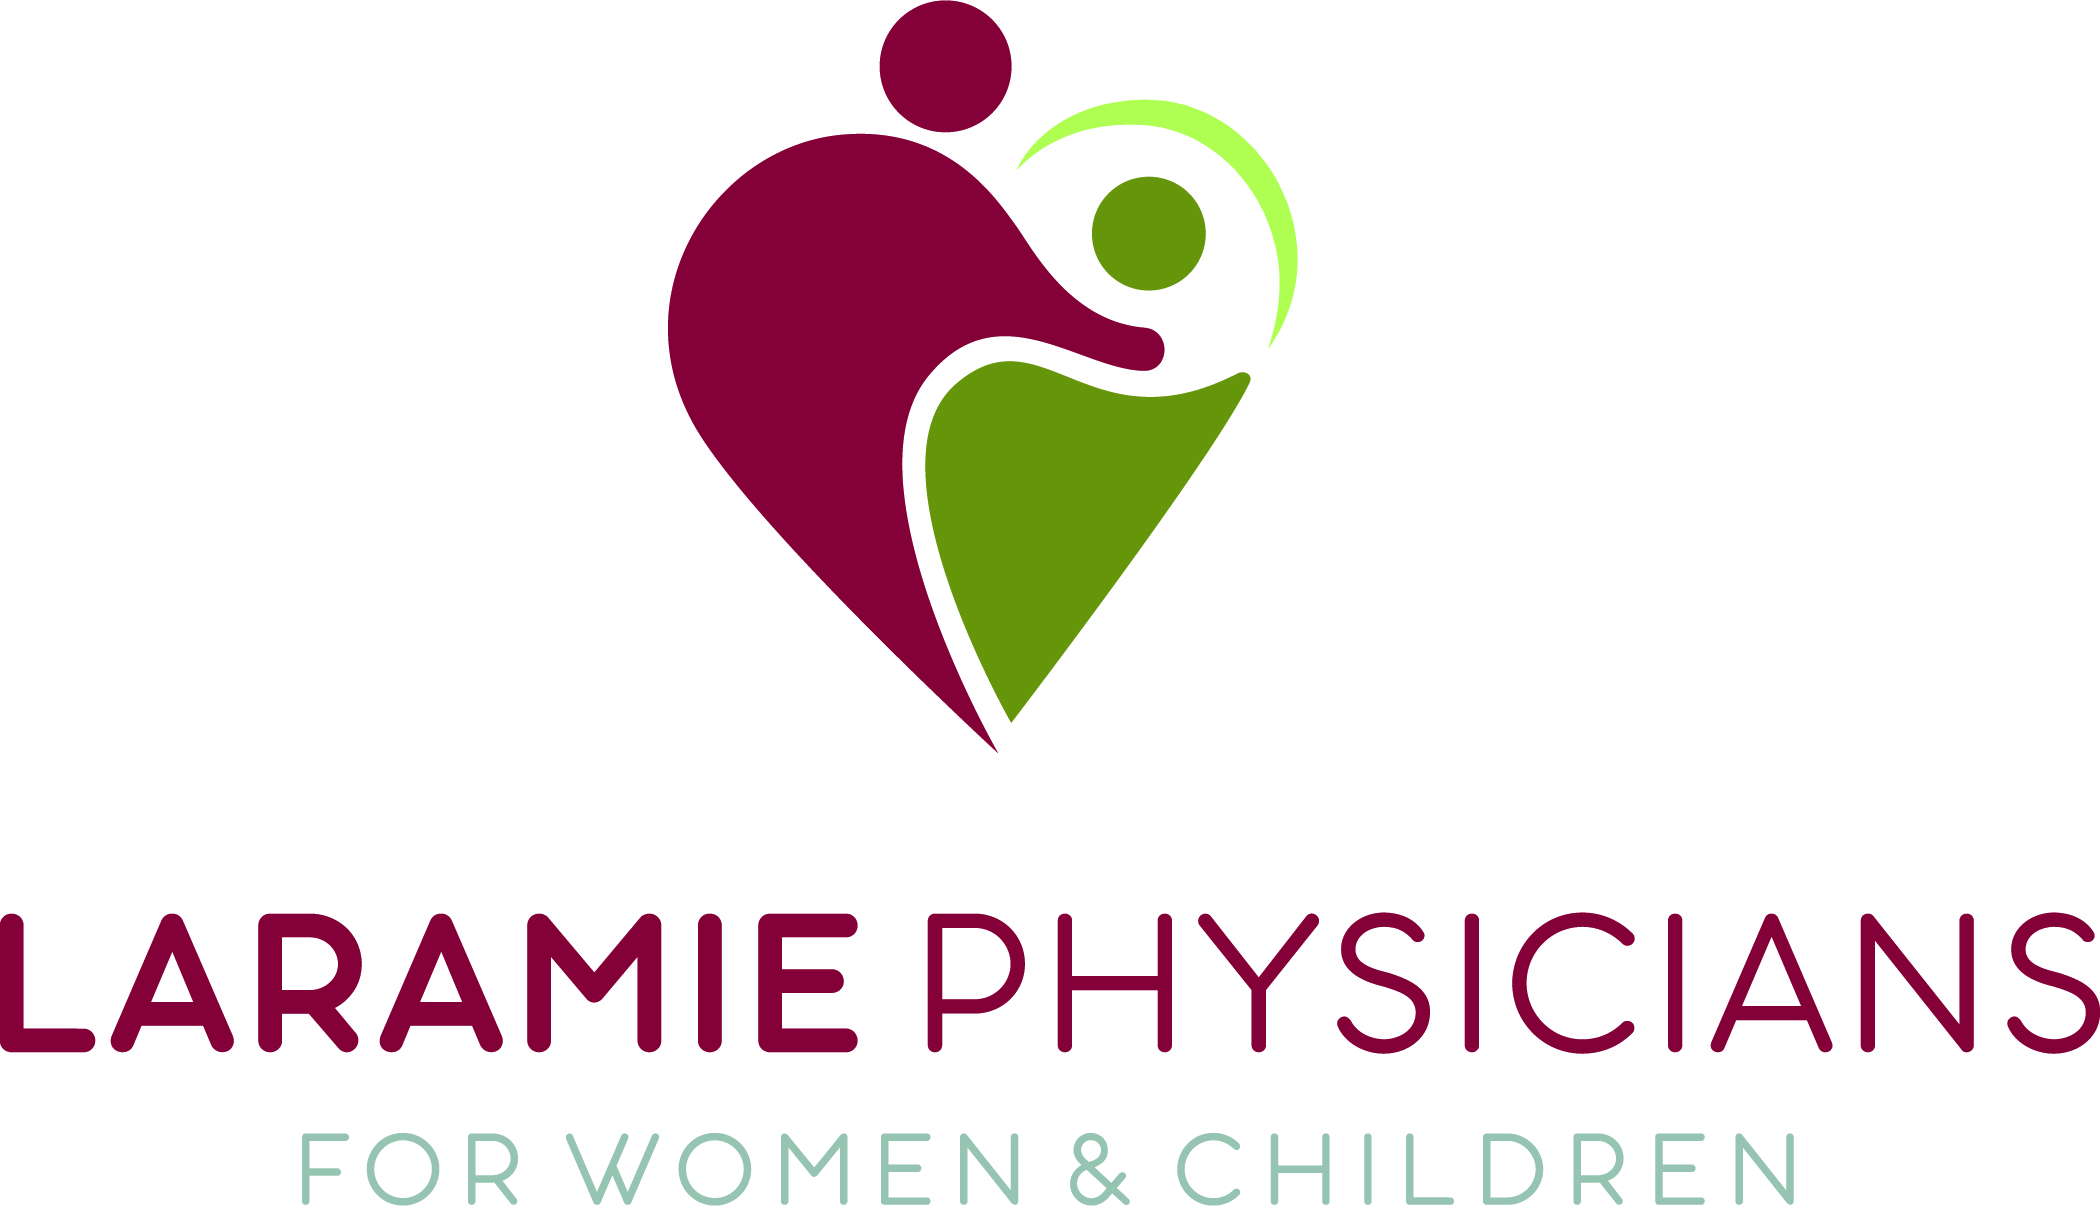 Laramie Physicians for Women & Children